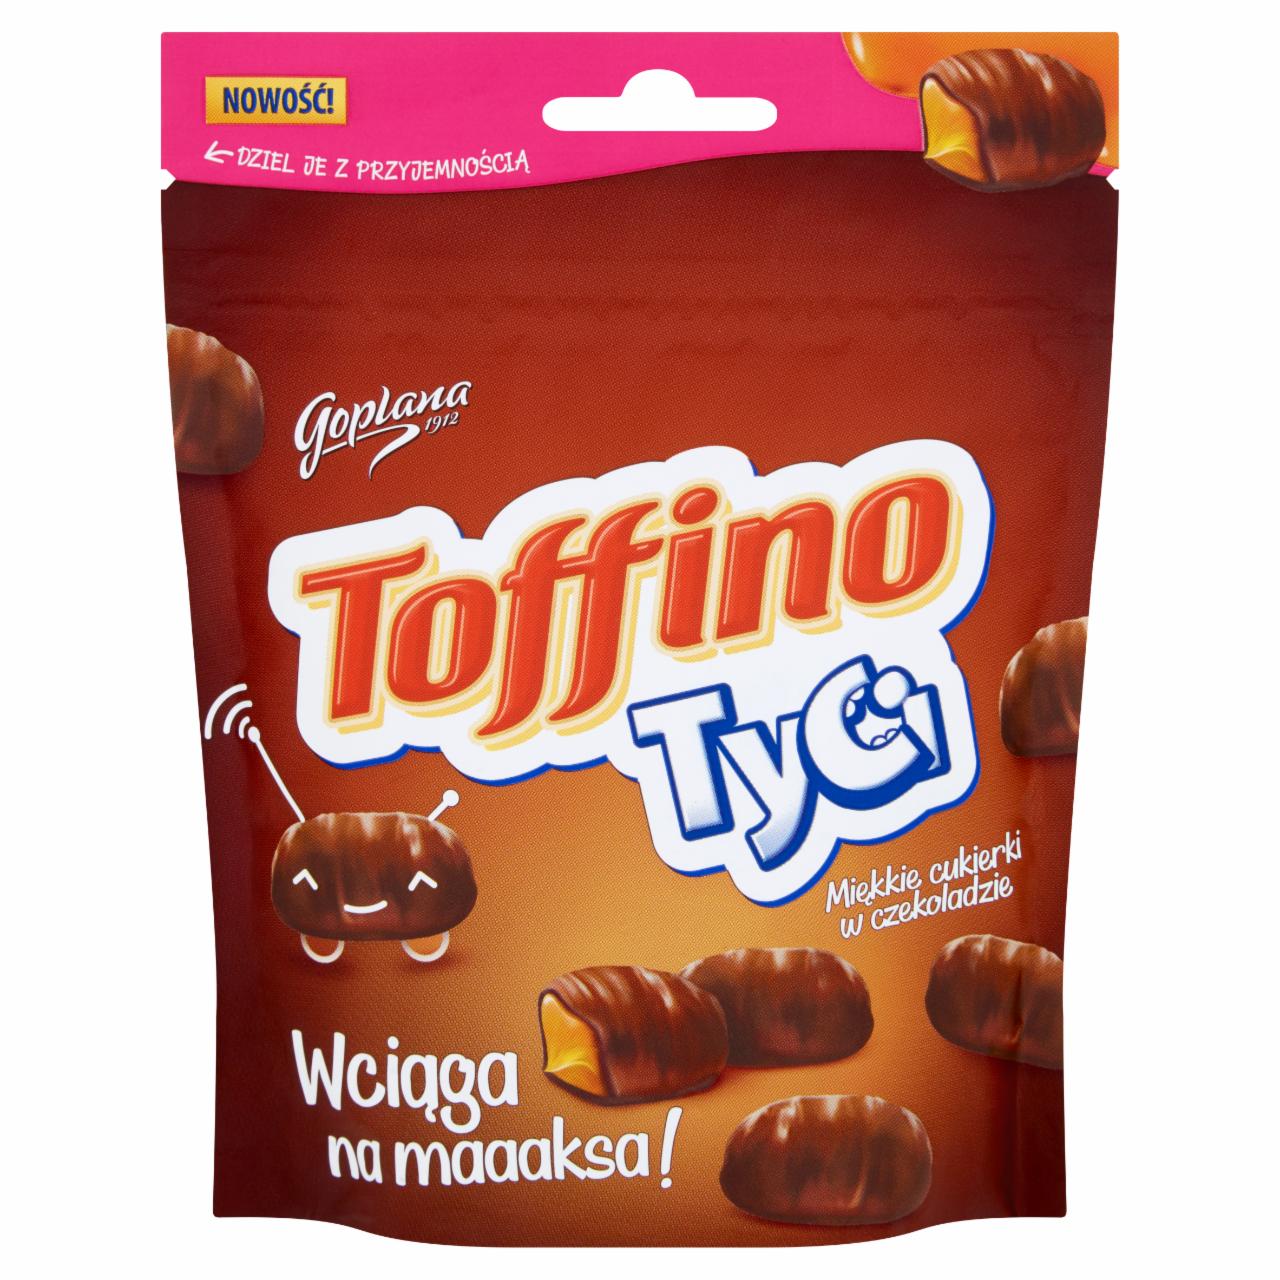 Zdjęcia - Goplana Toffino Tyci Miękkie cukierki w czekoladzie 110 g